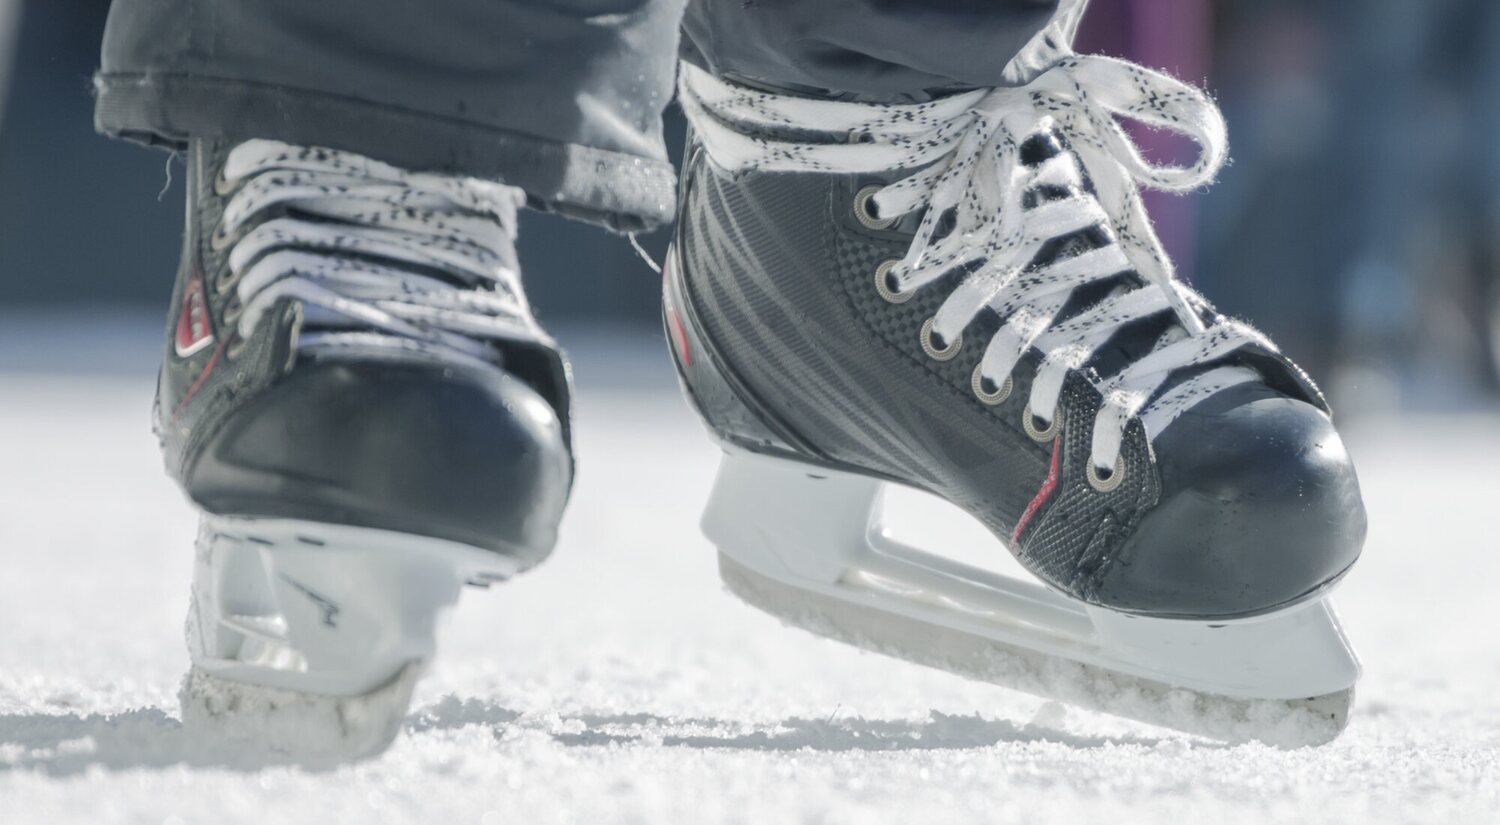 Patinaje sobre hielo y sobre ruedas: diferencias entre ambos